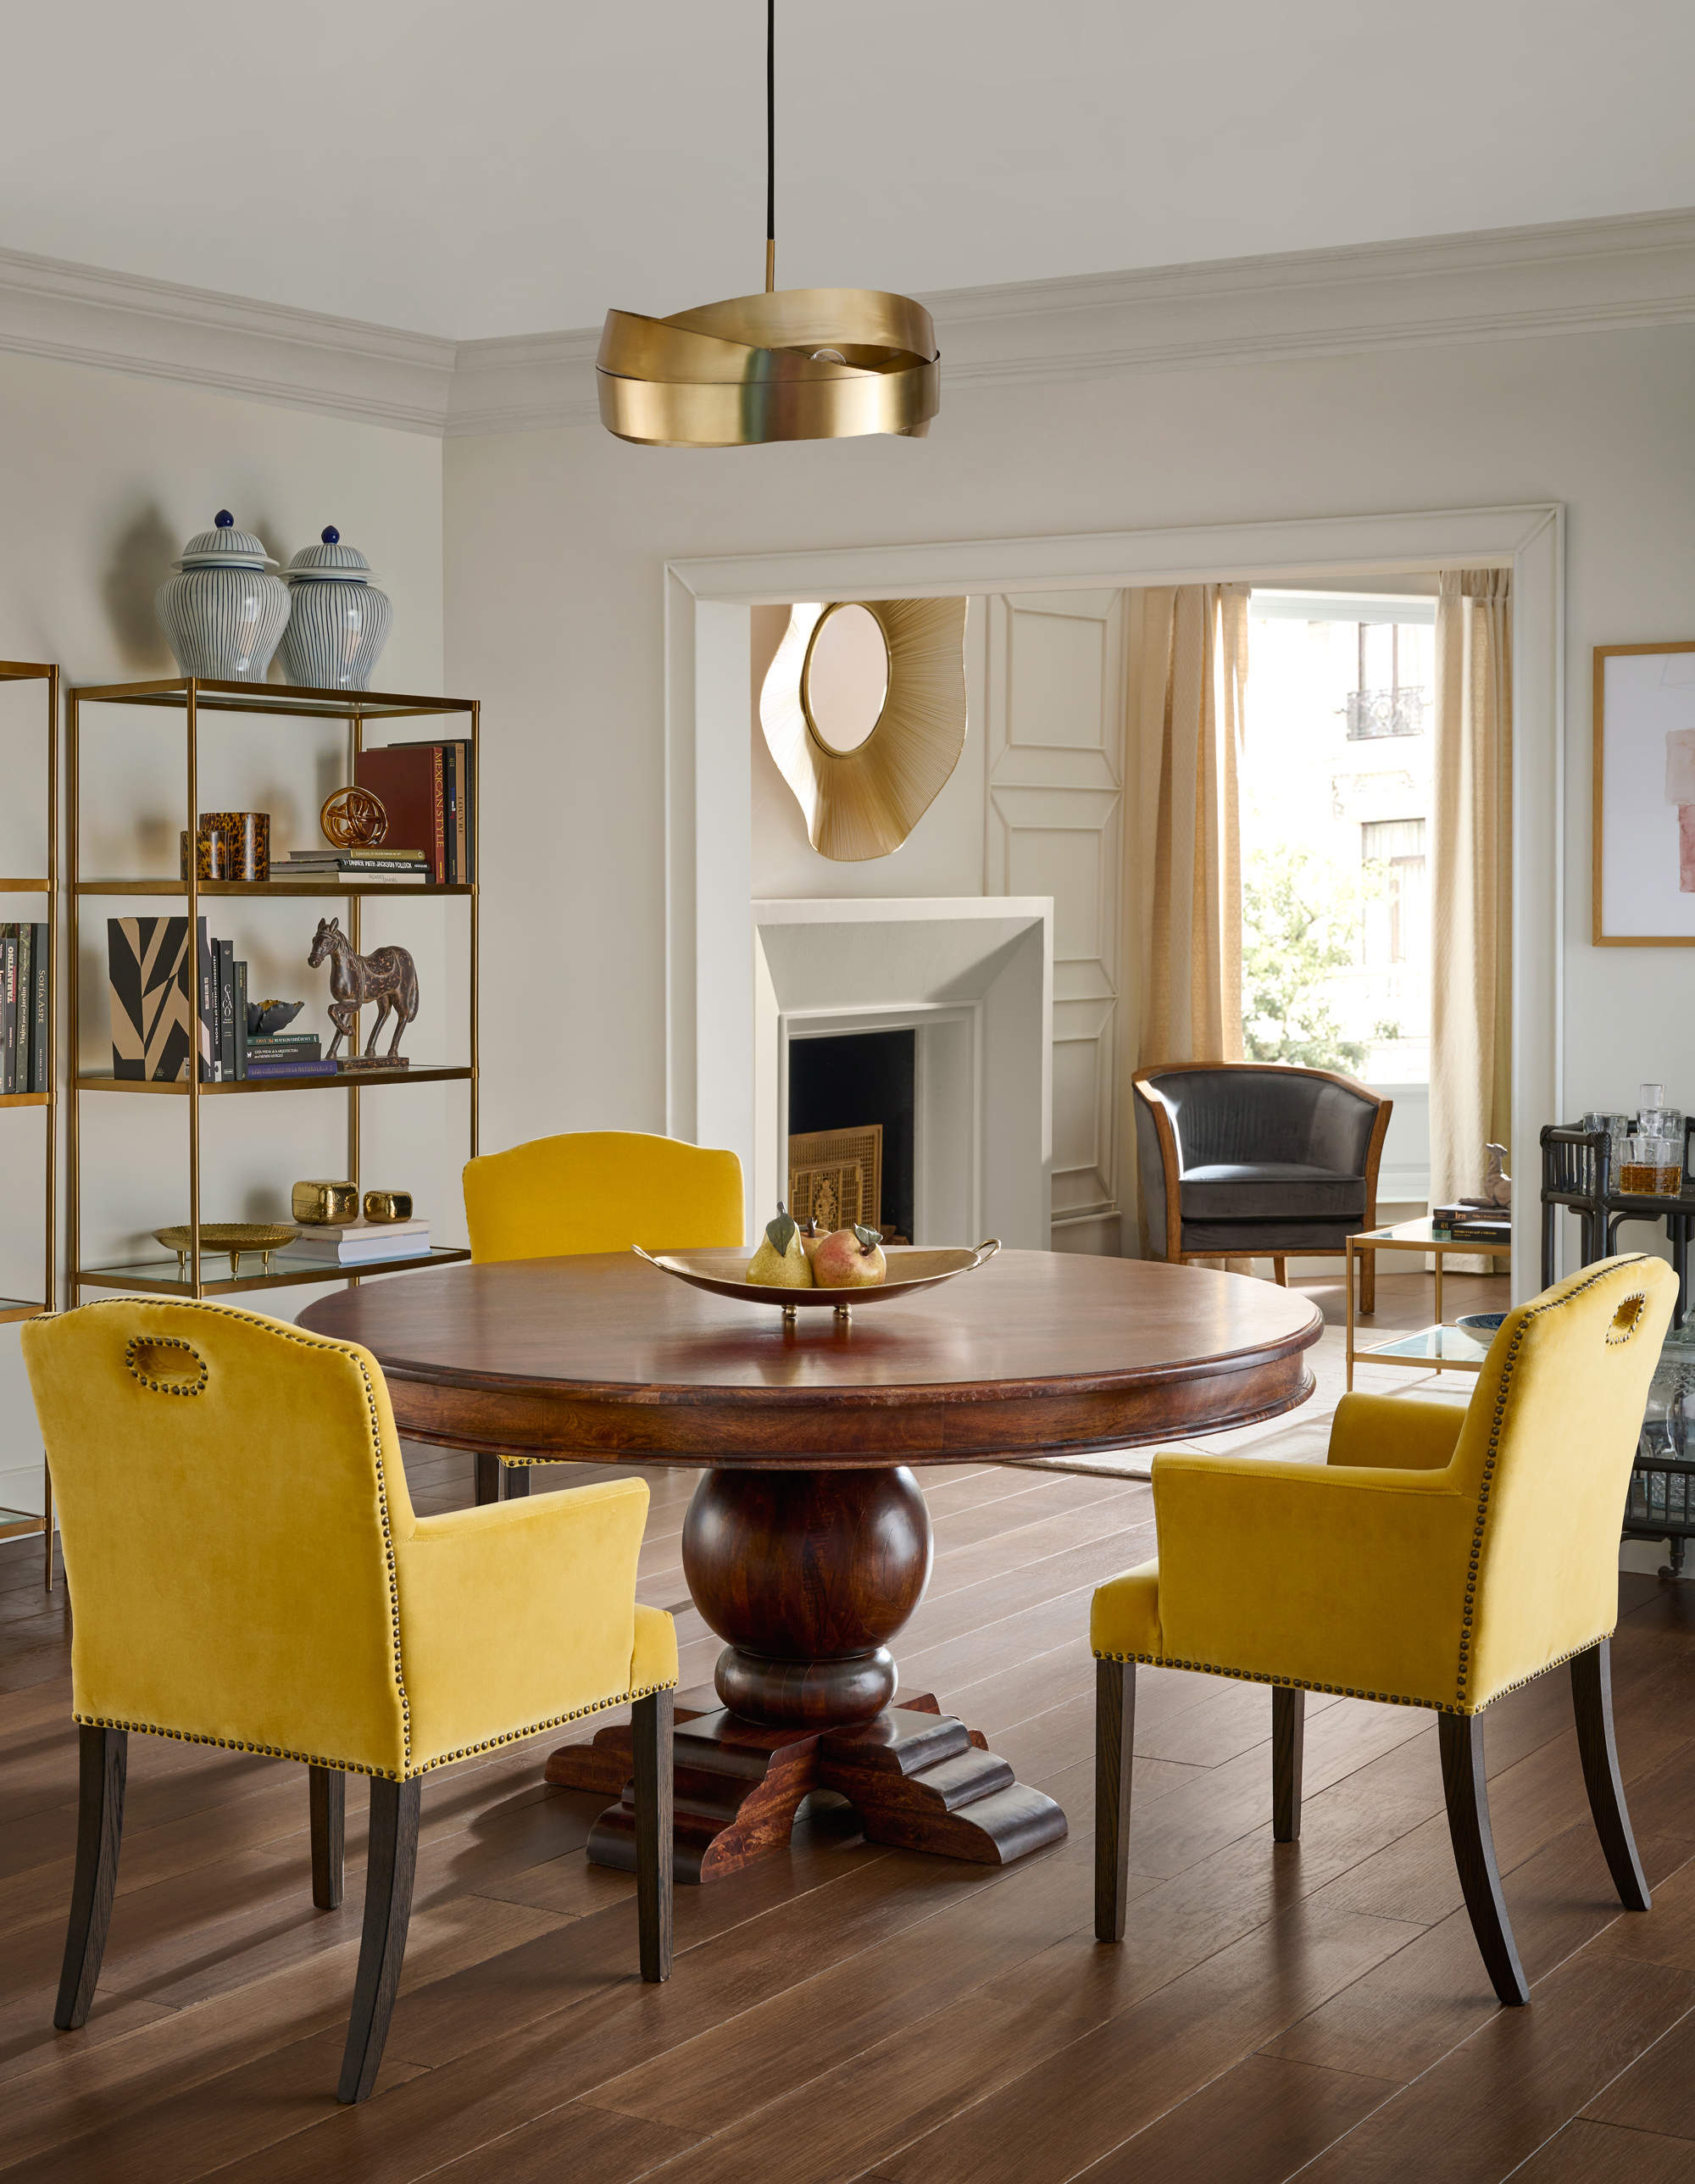 Comedor con mesa redonda de madera, sillas tapizadas en mostaza y lámpara de techo en dorado.